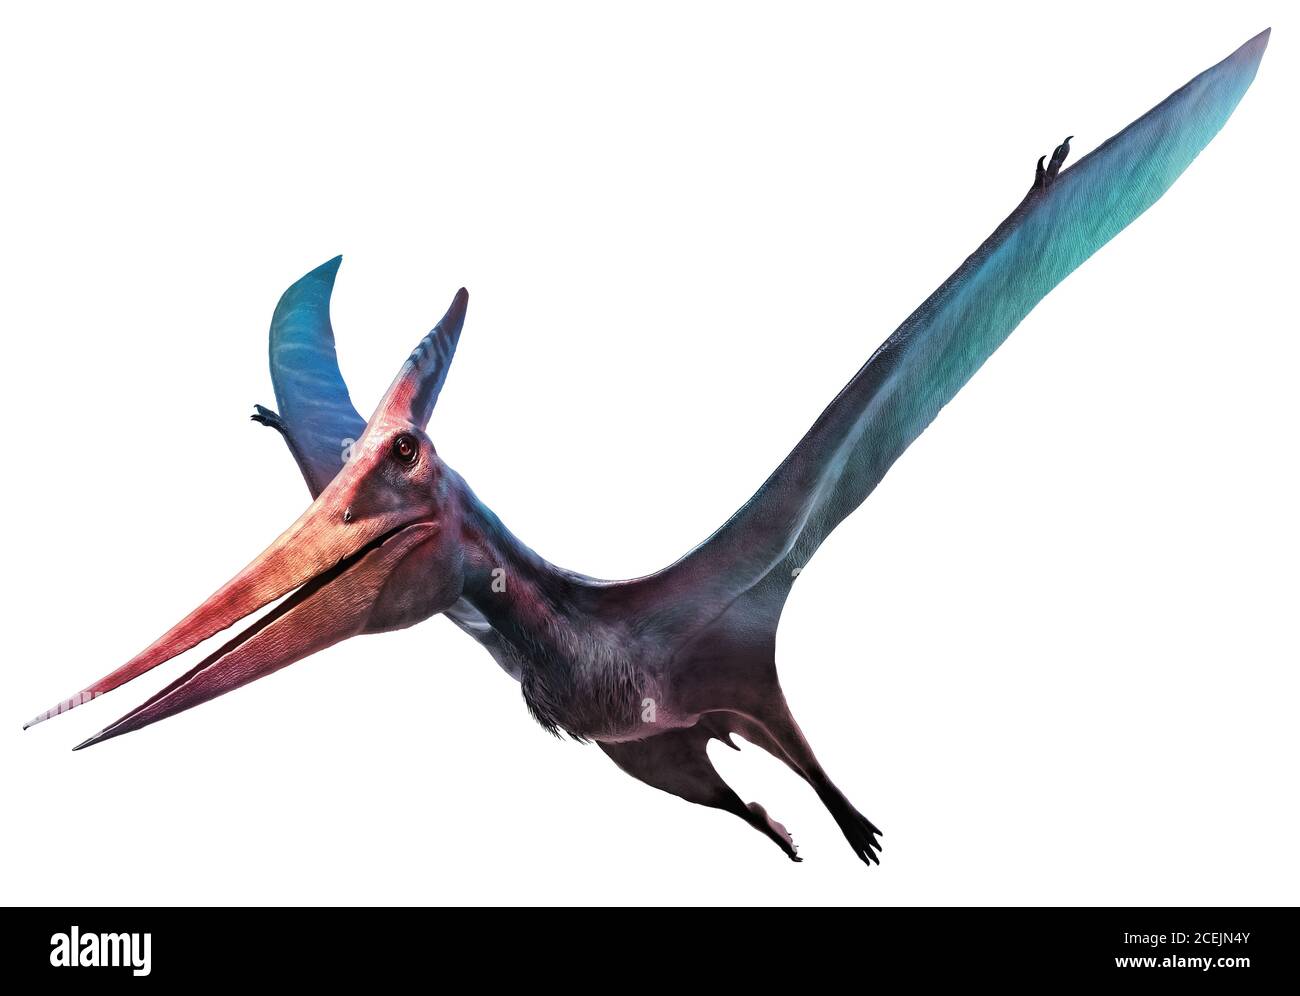 Flying dinosaur immagini e fotografie stock ad alta risoluzione - Alamy